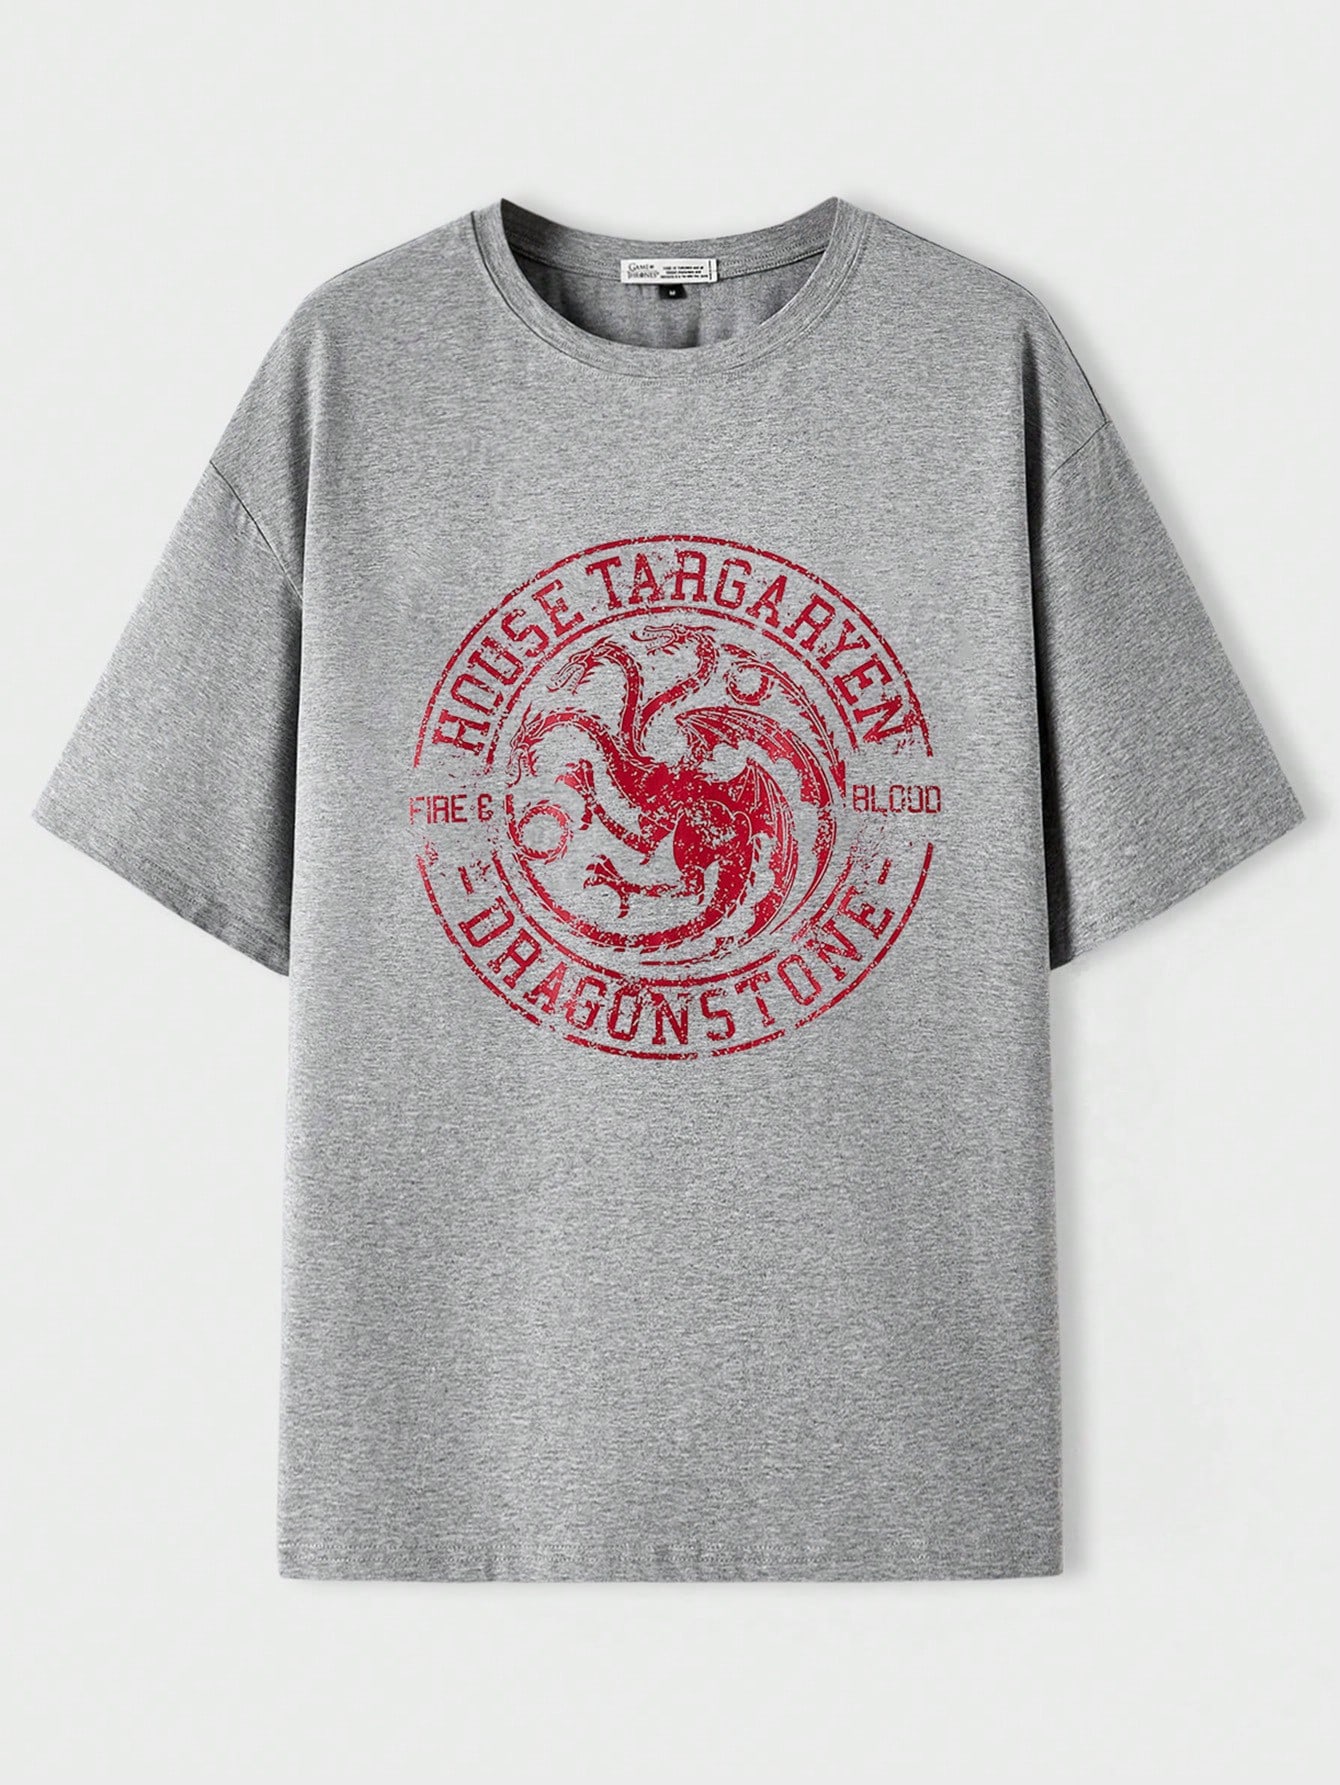 мужская футболка dragon crest game of thrones черный Футболка унисекс с заниженными плечами SHEIN с рисунком дракона и буквами, серый